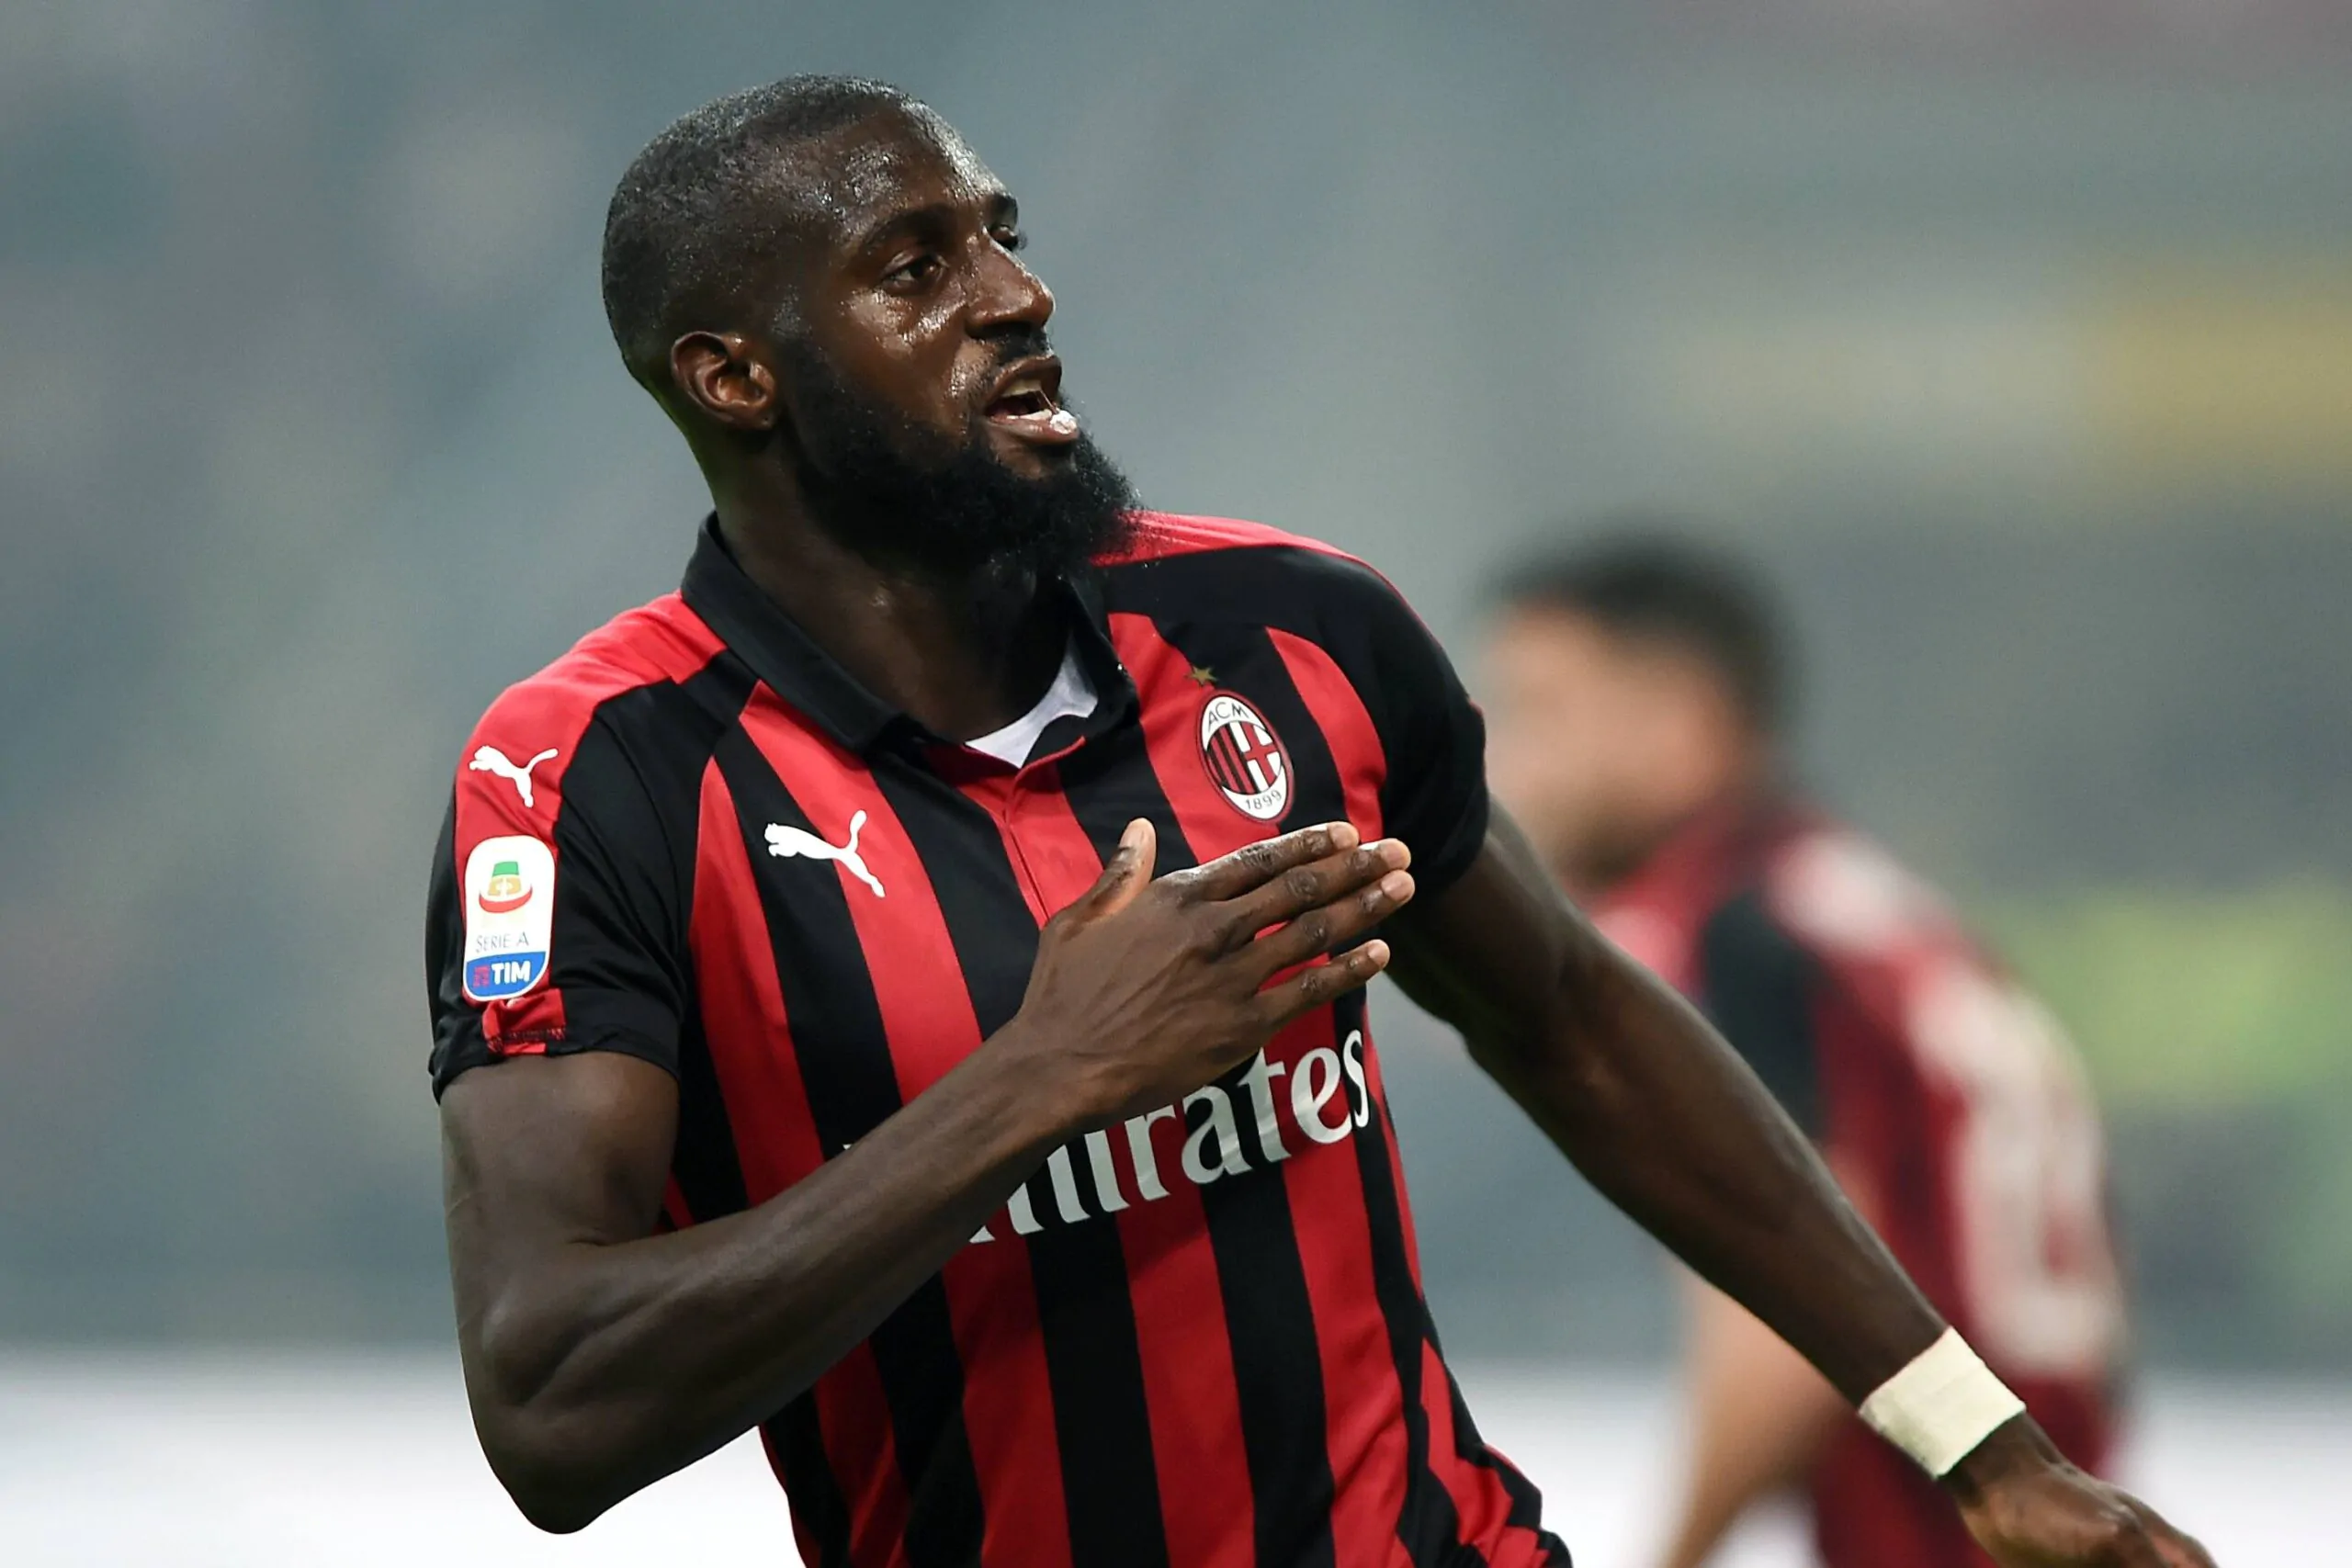 UFFICIALE – Bakayoko è un nuovo giocatore del Milan